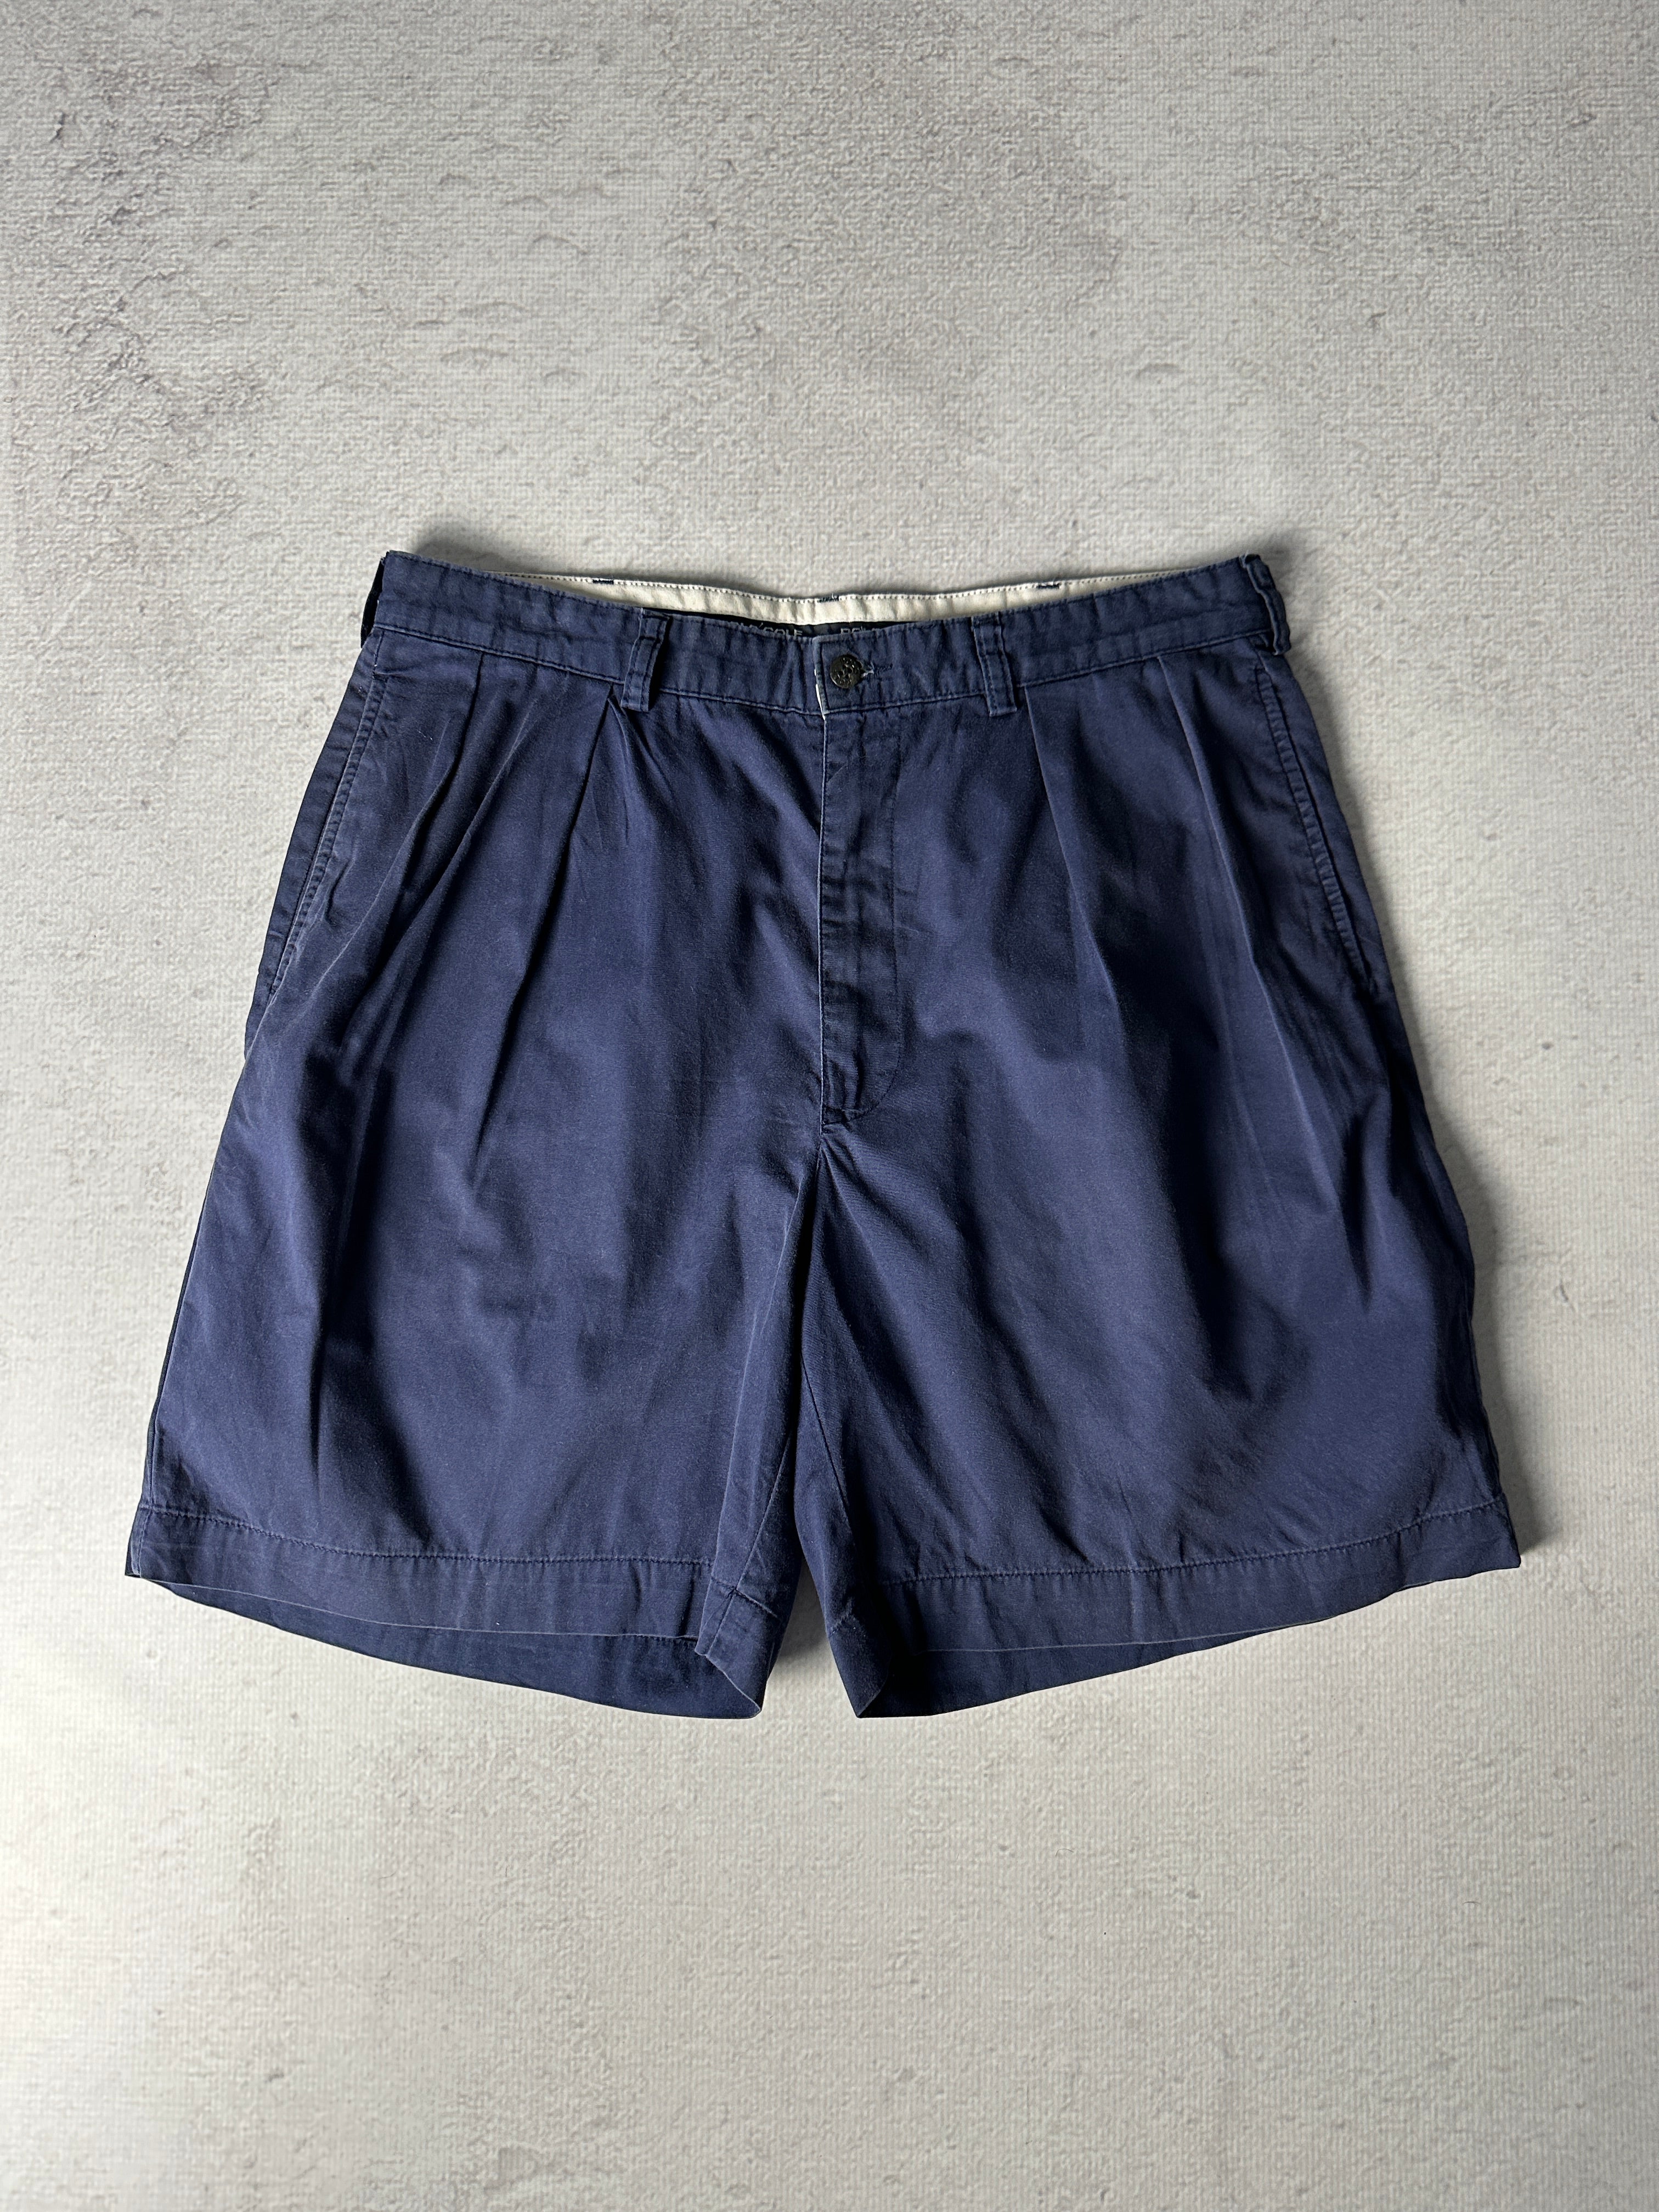 Vintage Polo Ralph Lauren Shorts - Men's 34